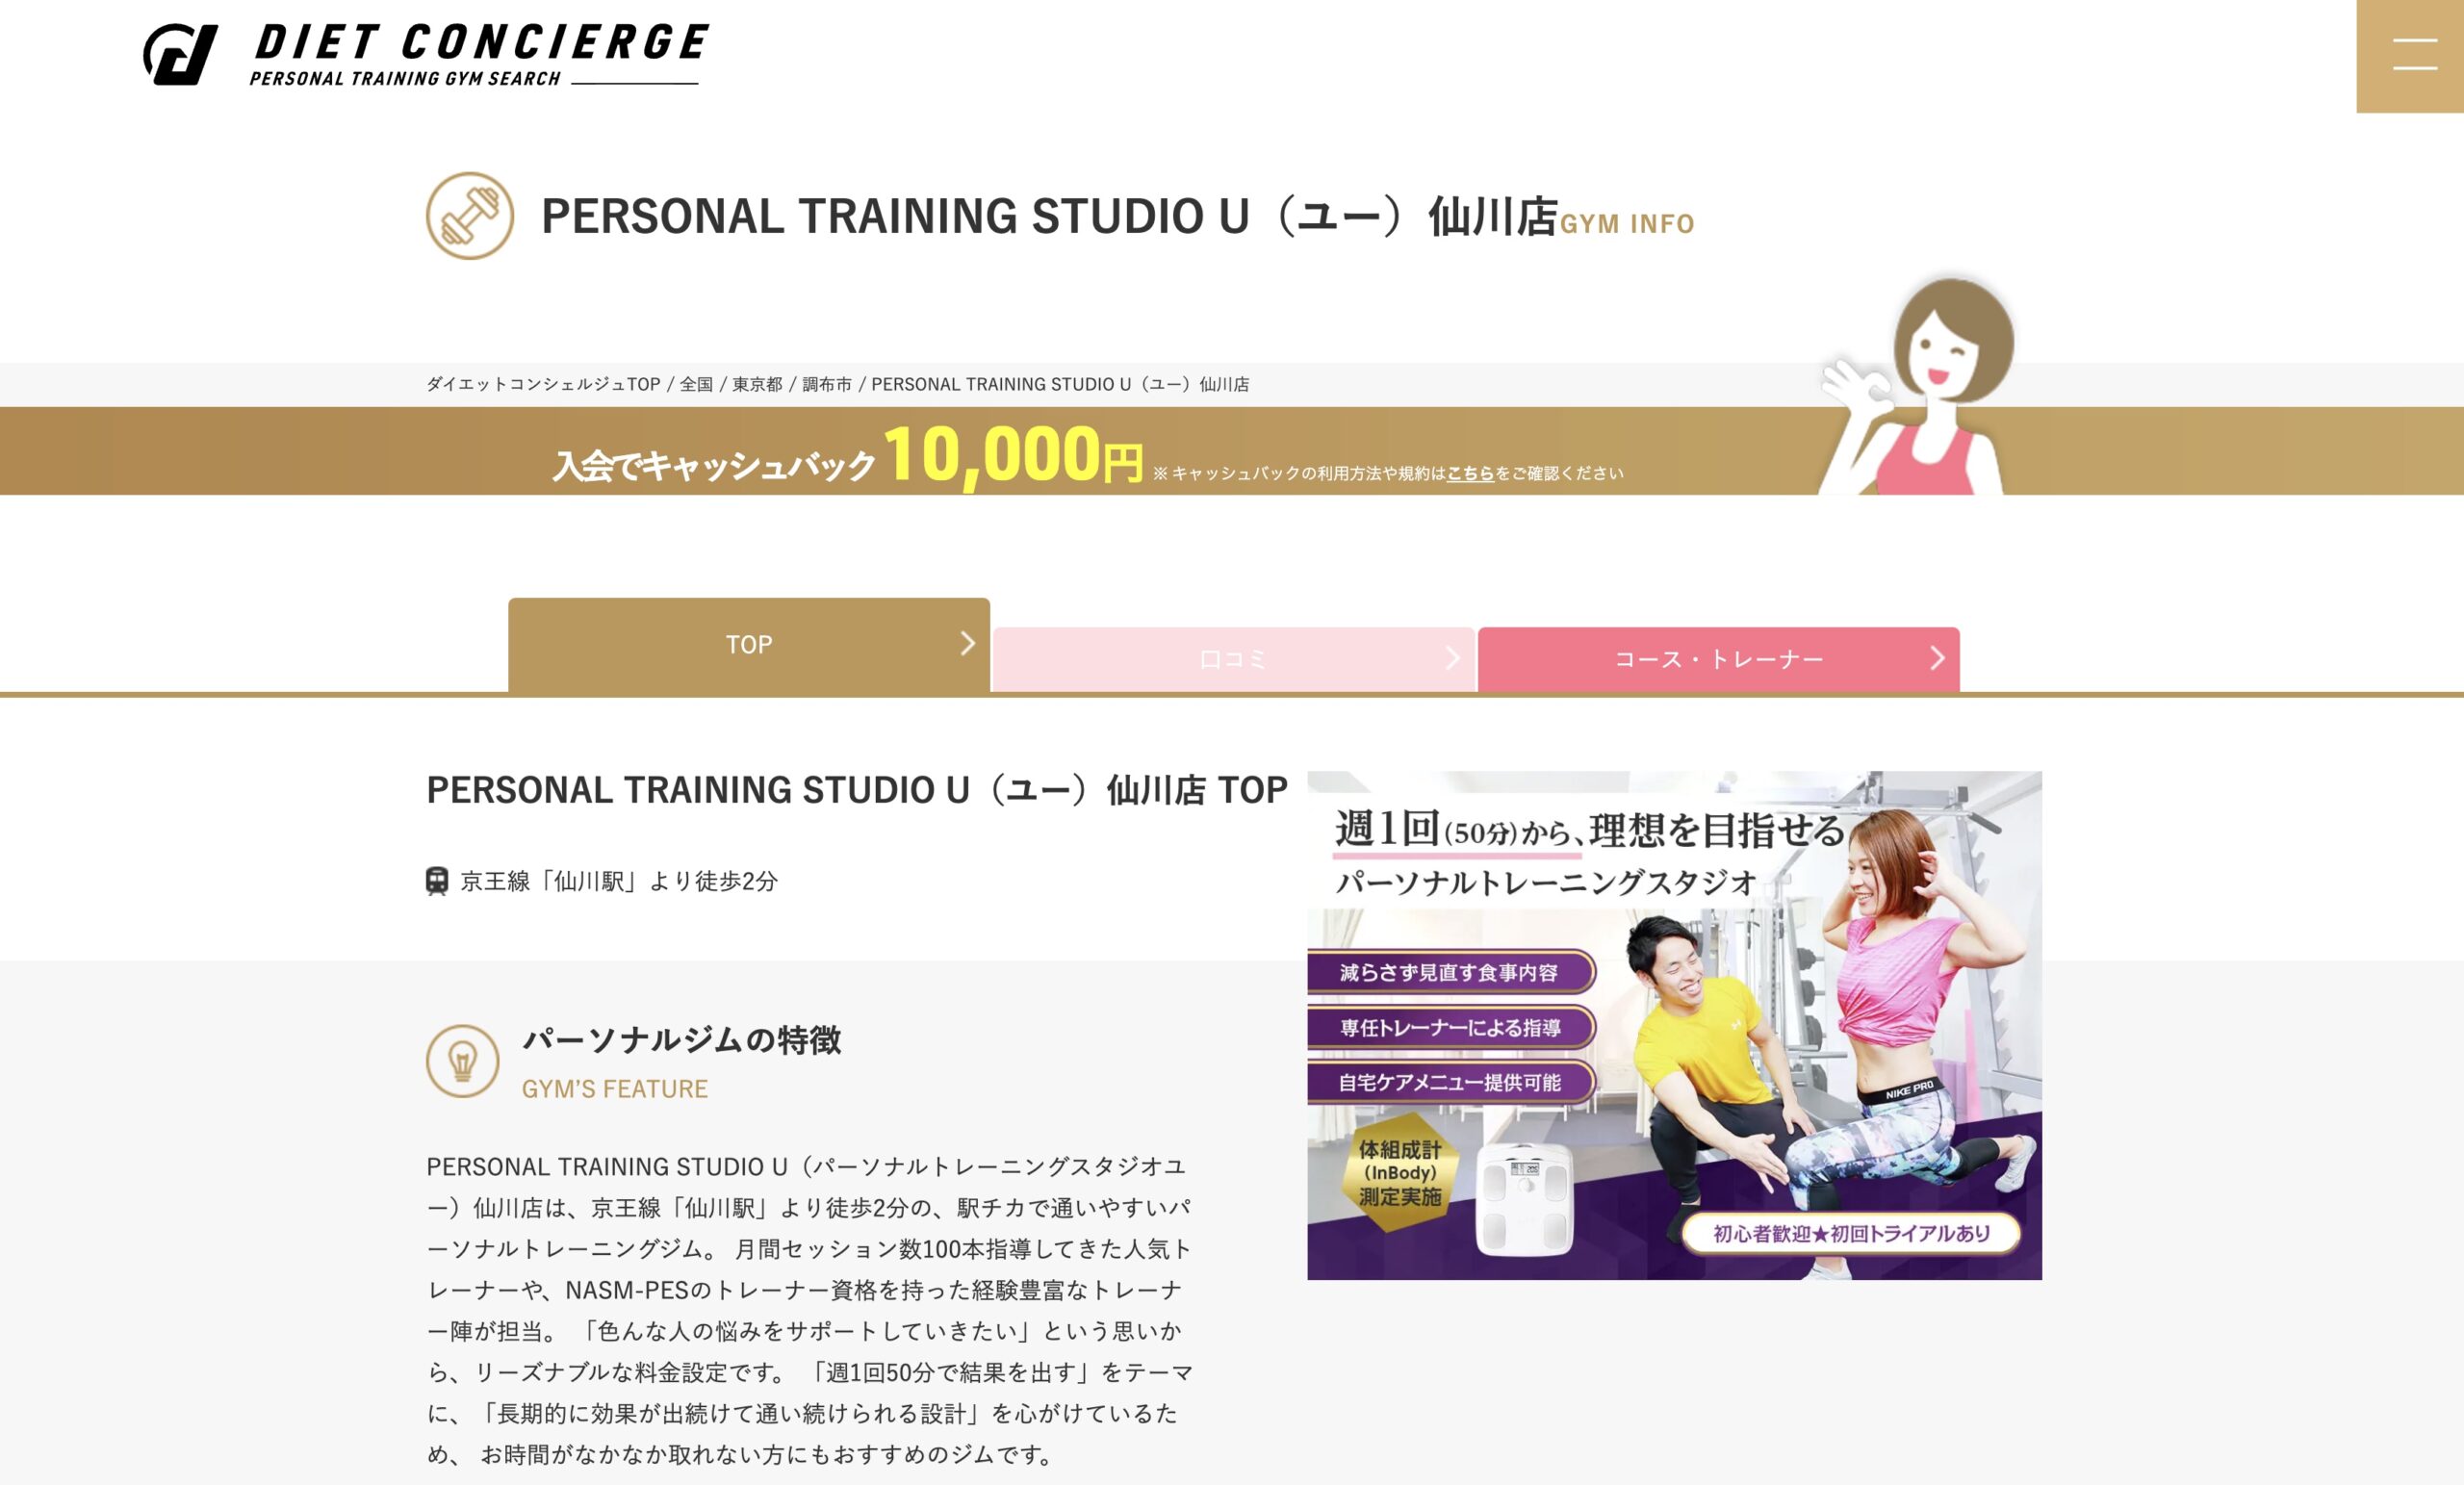 PERSONAL TRAINING STUDIO U 仙川店がDIET CONCIERGE（ダイエットコンシェルジュ）様に掲載されました